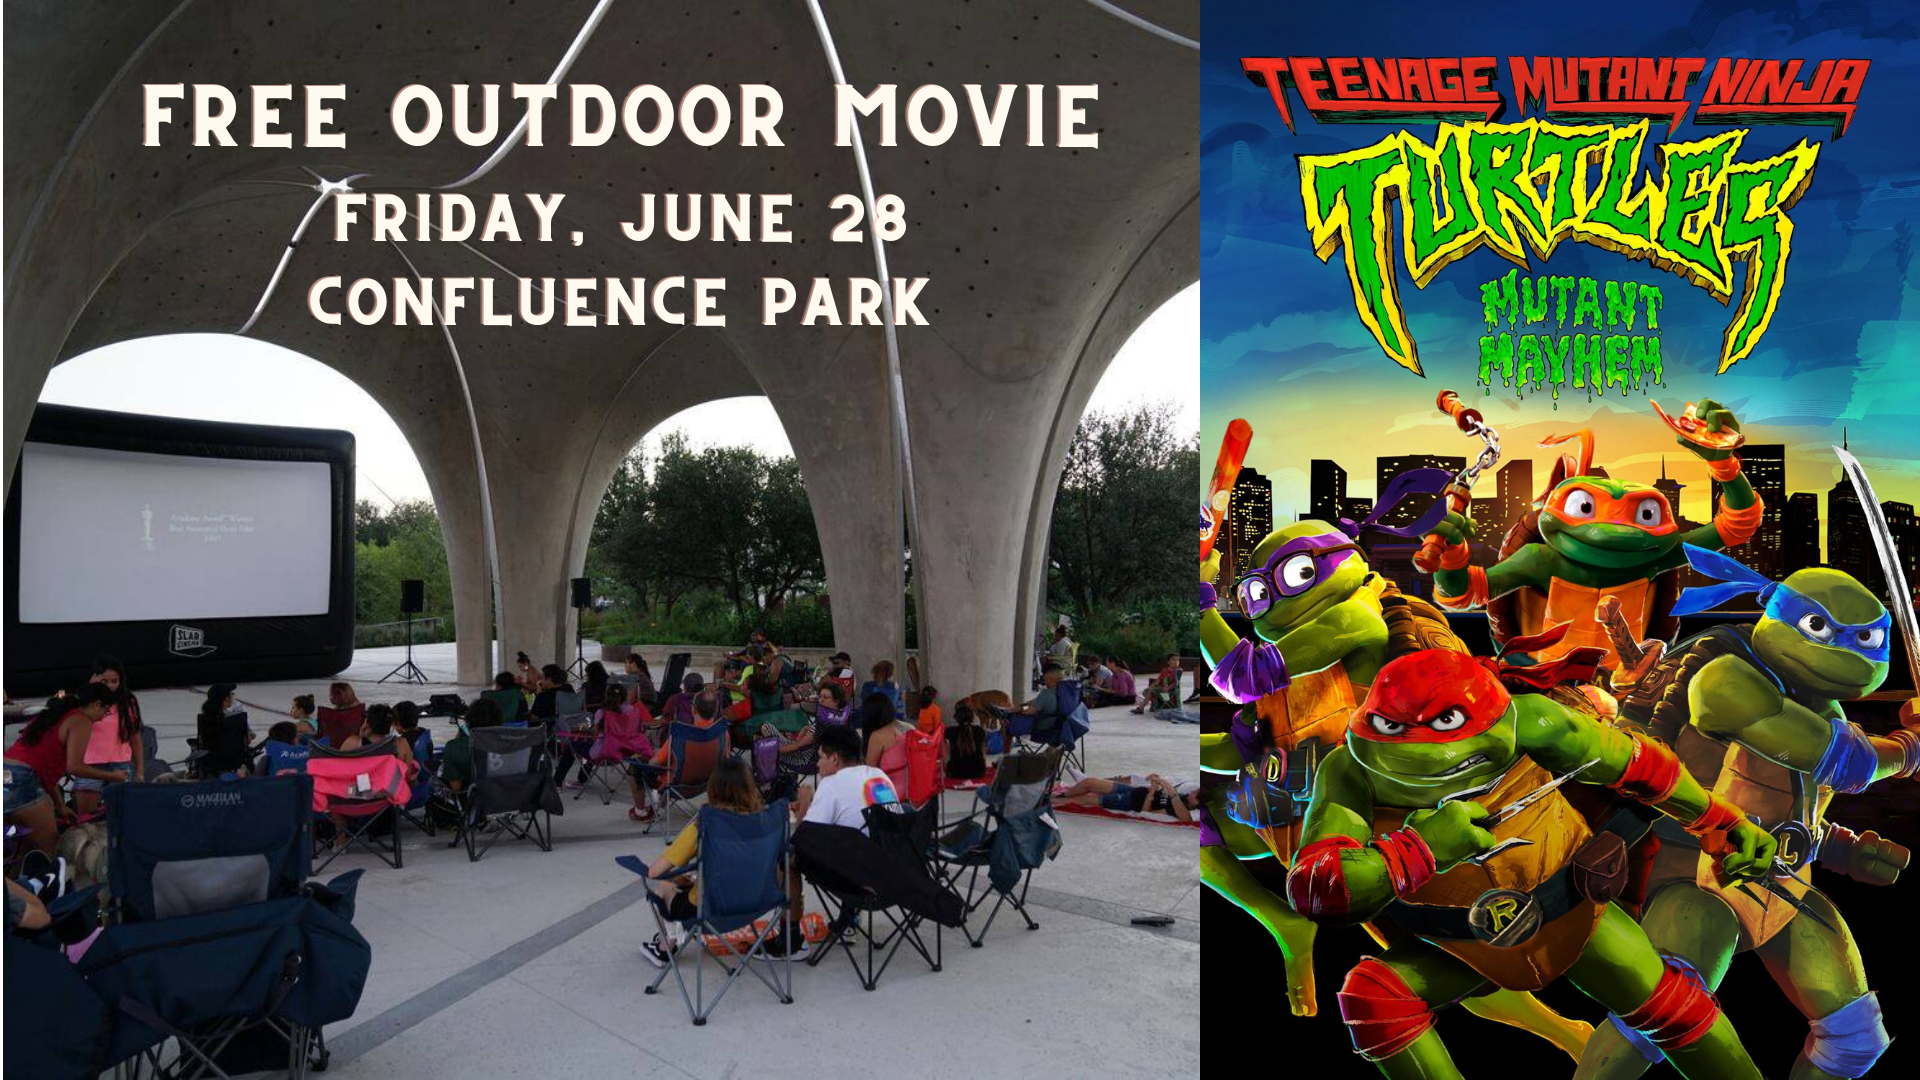 Outdoor Cinema Series: Teenage Mutant Ninja Turtles - Mutant Mayhem